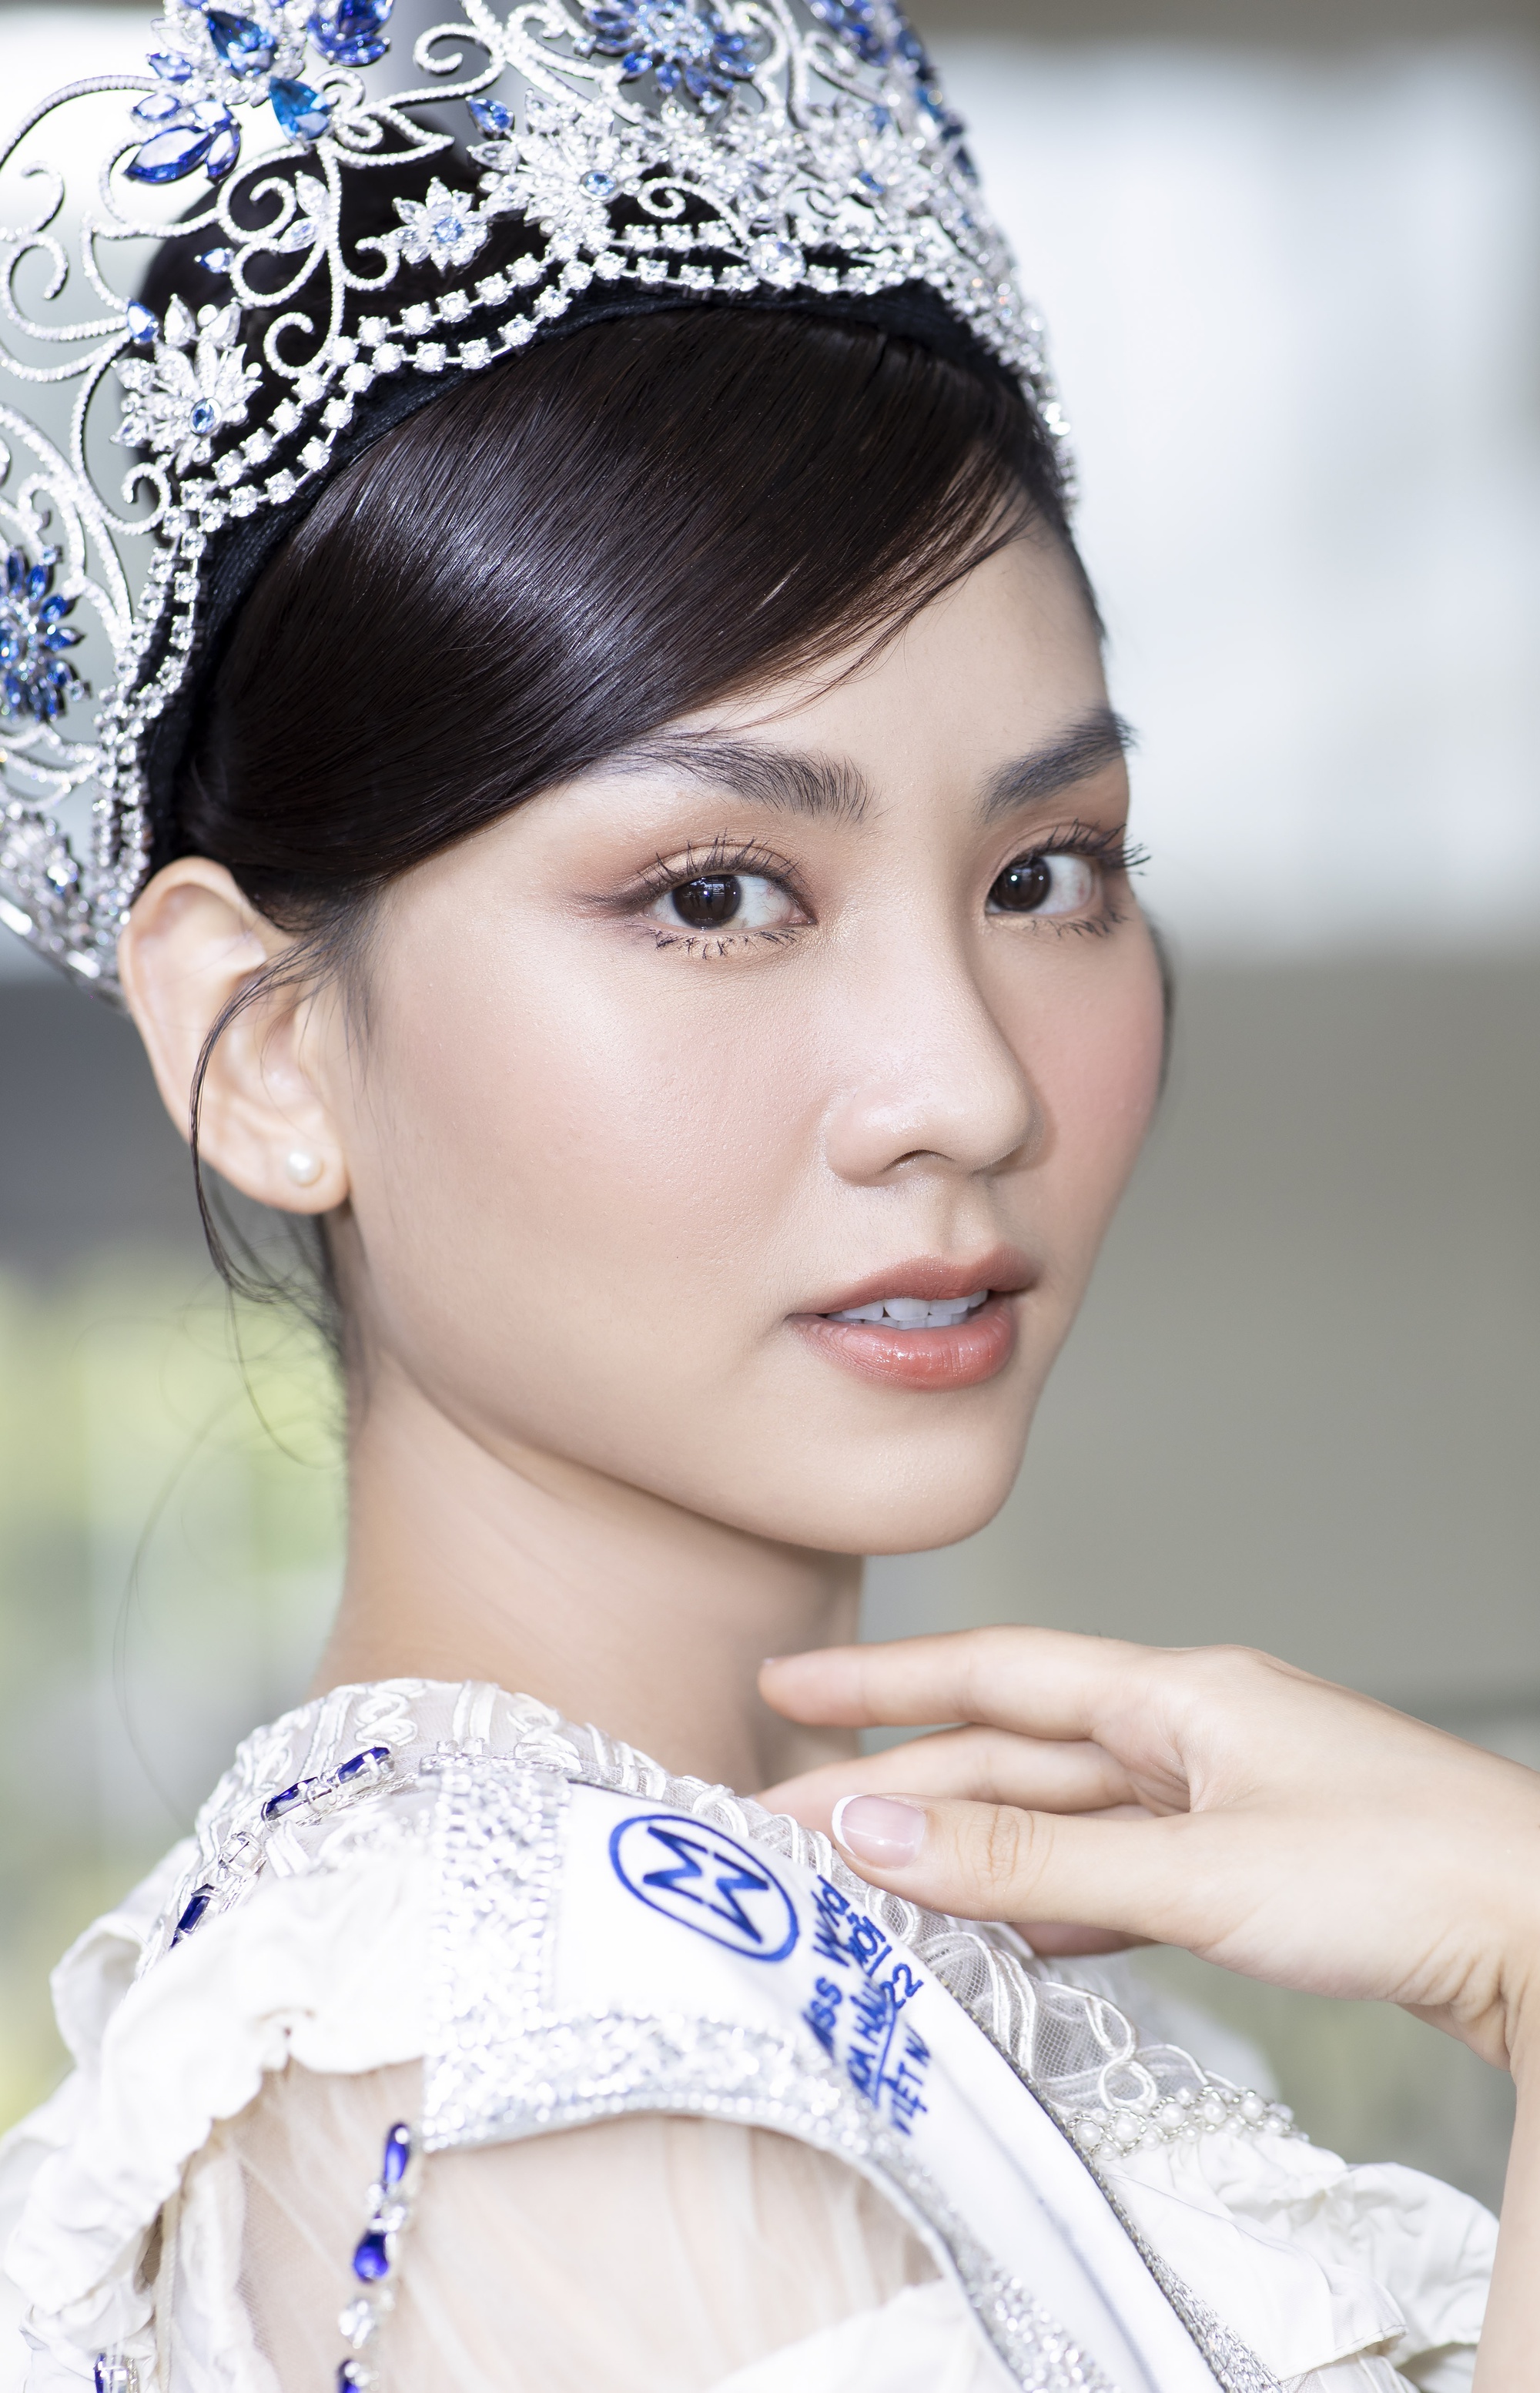 Hoa hậu Mai Phương phản hồi tin được dọn đường để đăng quang - Ảnh 6.